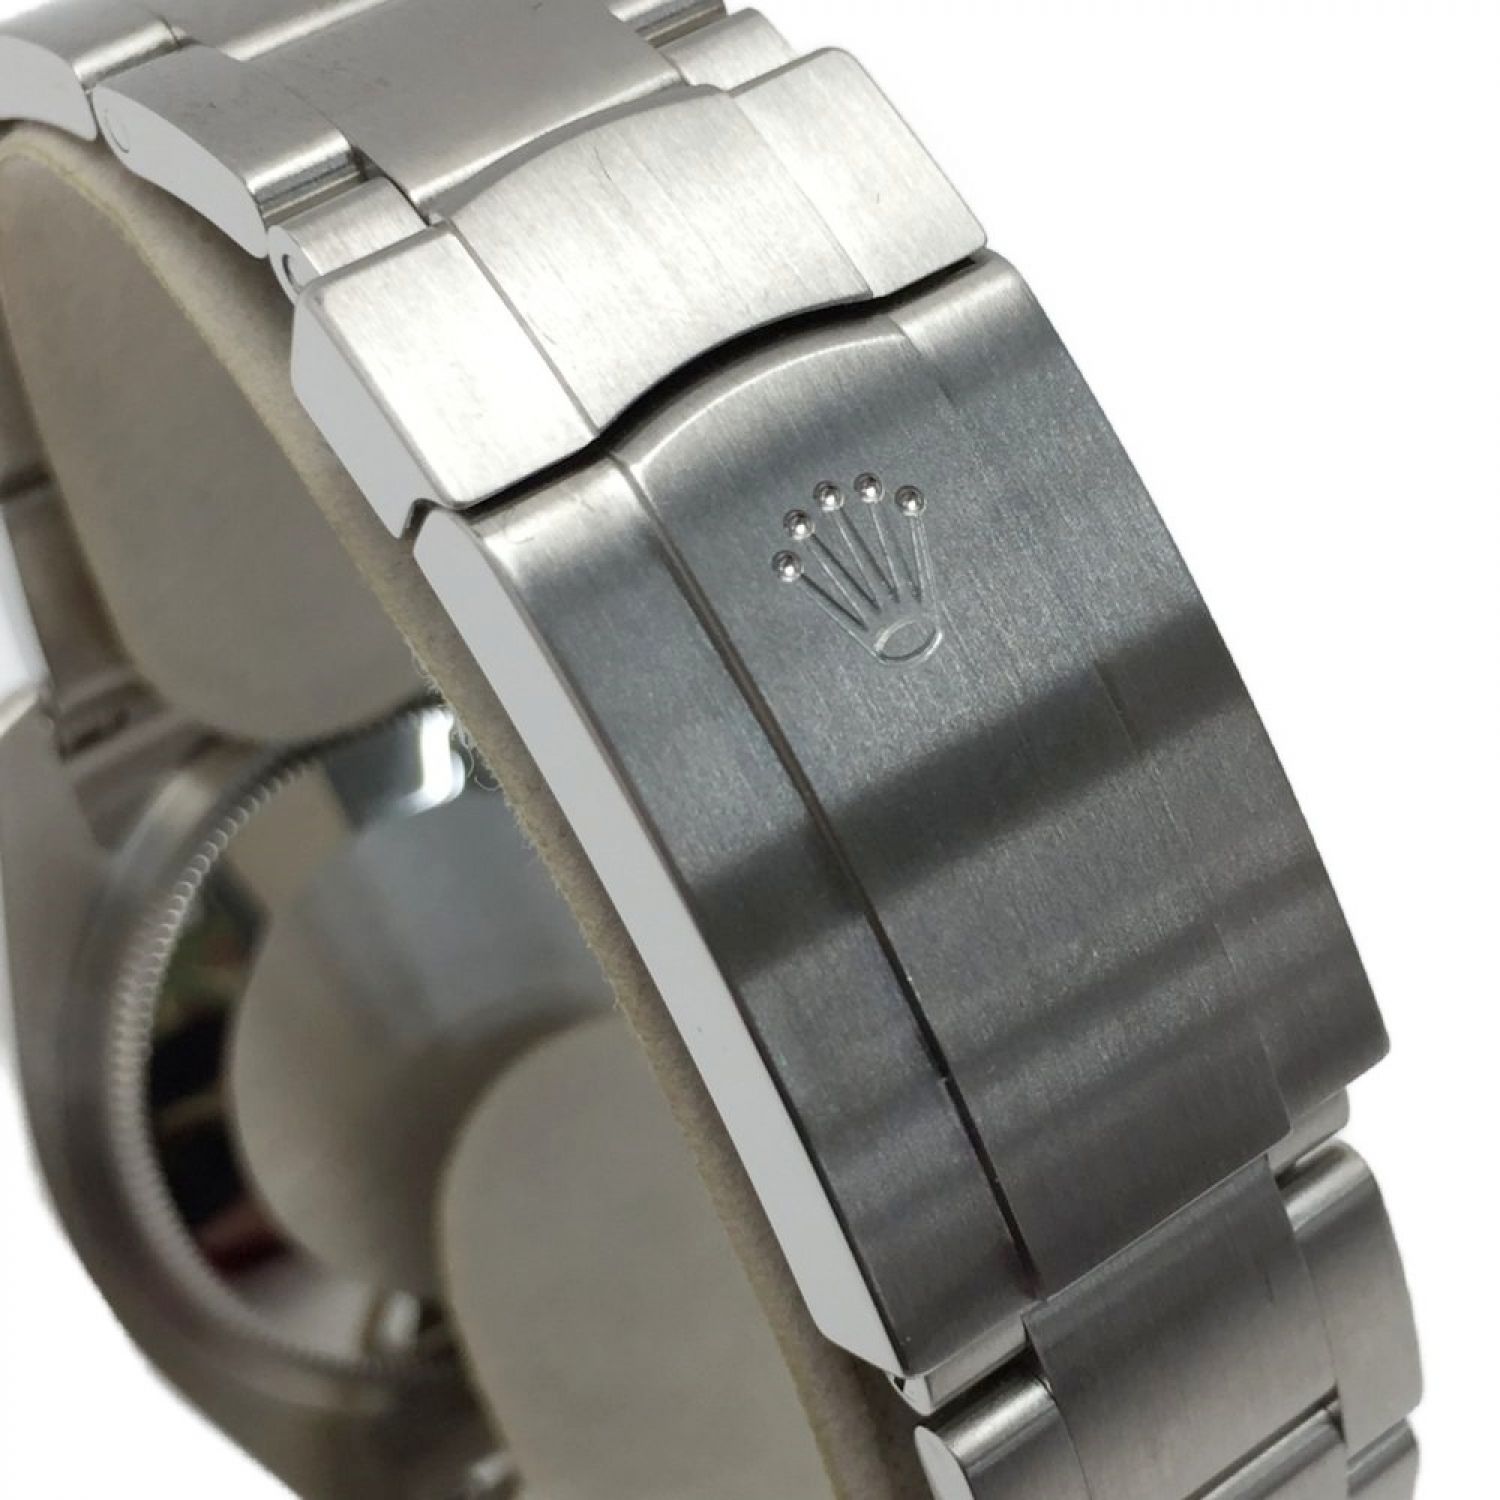 ロレックス ROLEX 116000 M番(2007年頃製造) ブラック メンズ 腕時計